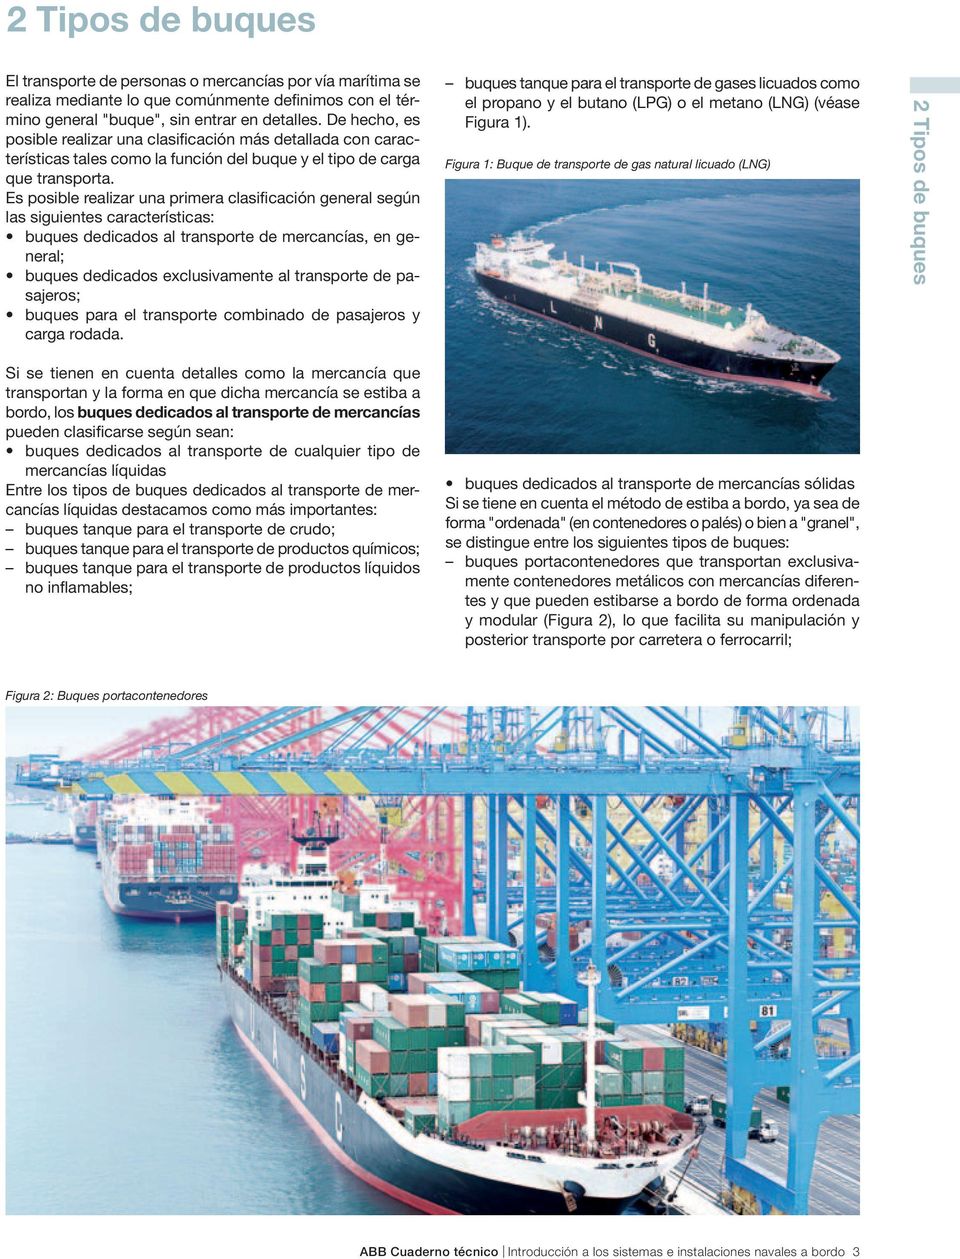 Es posible realizar una primera clasificación general según las siguientes características: buques dedicados al transporte de mercancías, en general; buques dedicados exclusivamente al transporte de